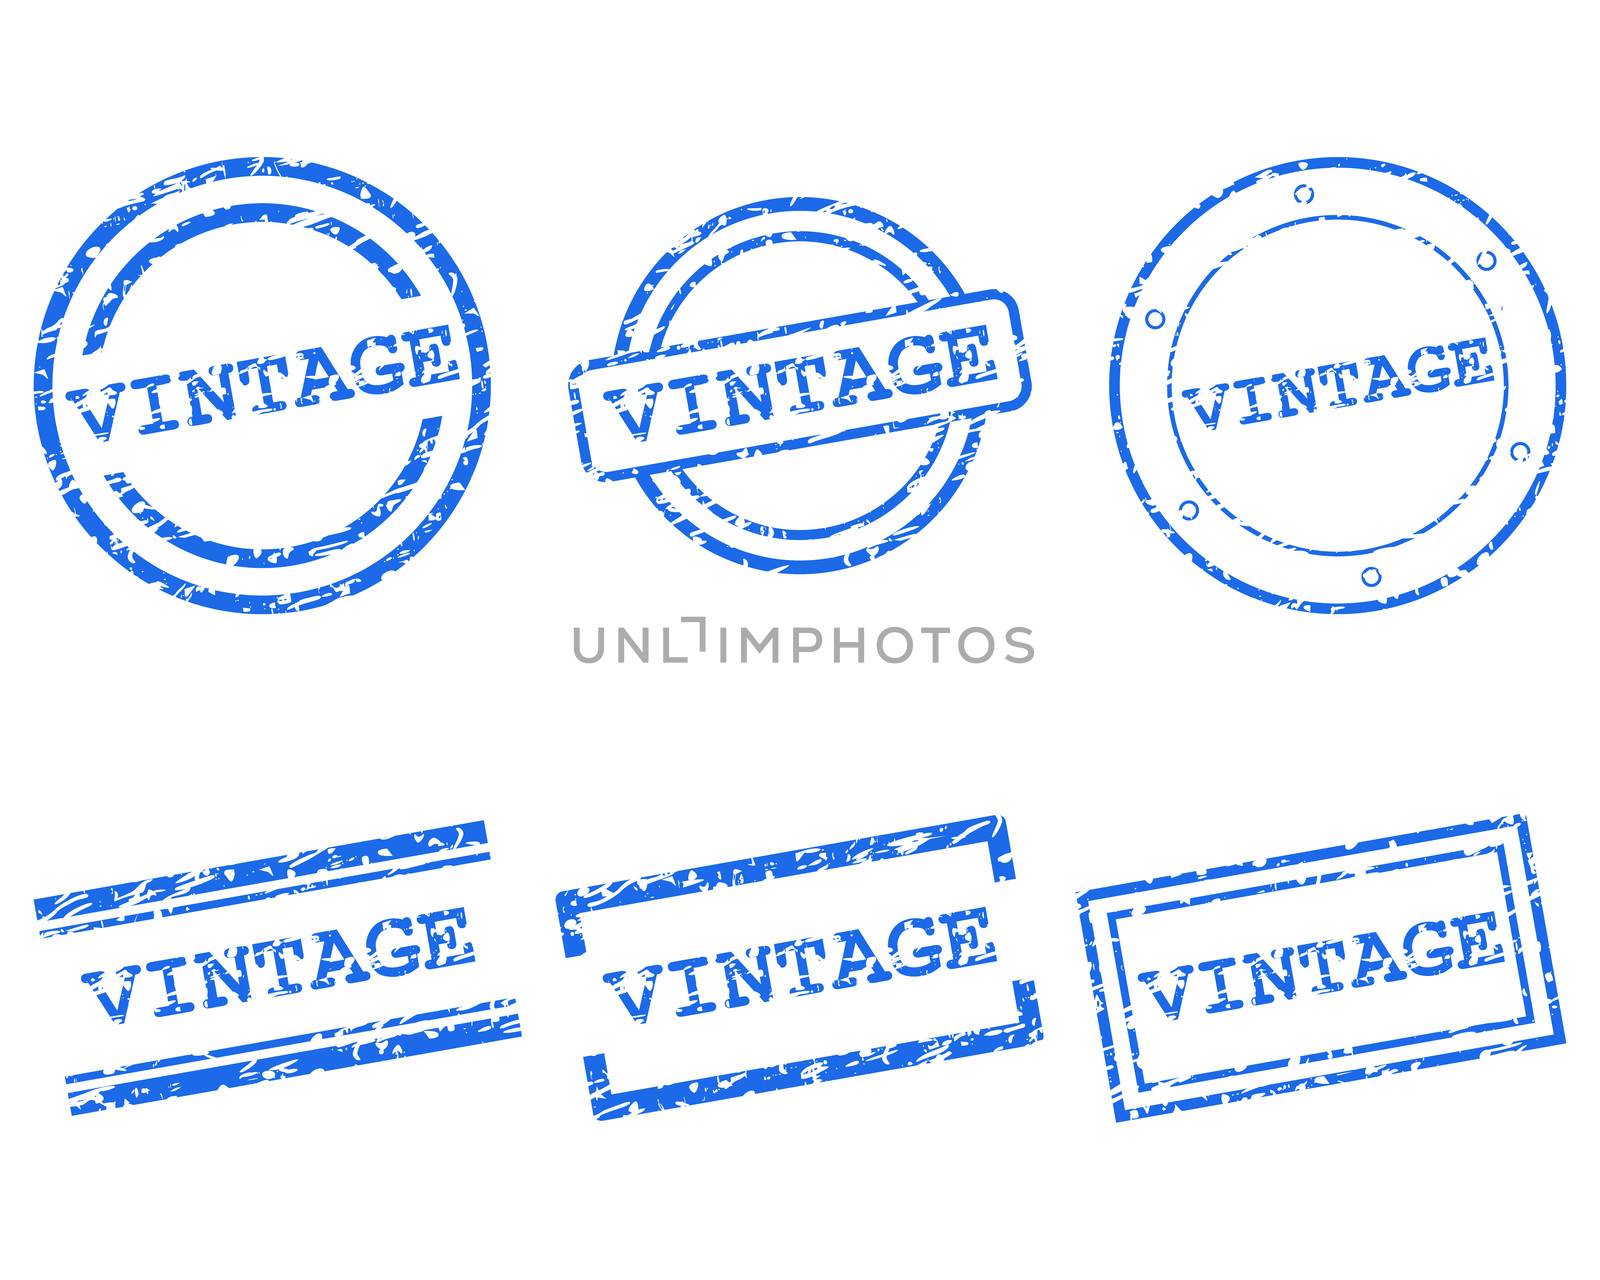 Vintage stamps by rbiedermann